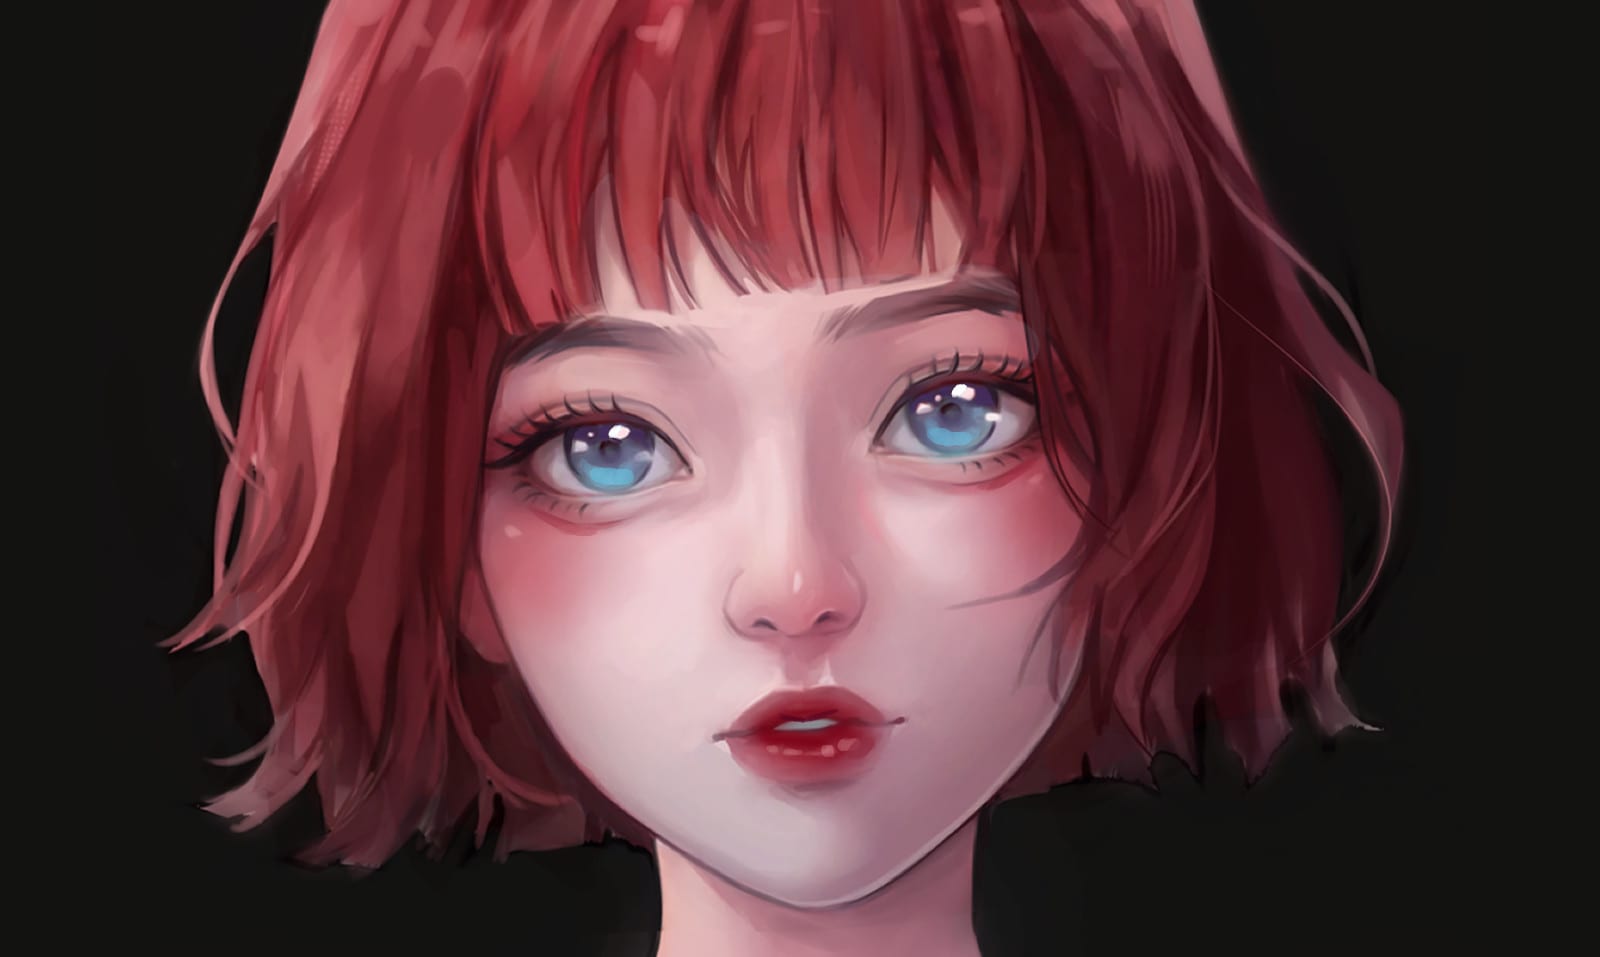 Digital Art Anime Girl by MIKALish on DeviantArt